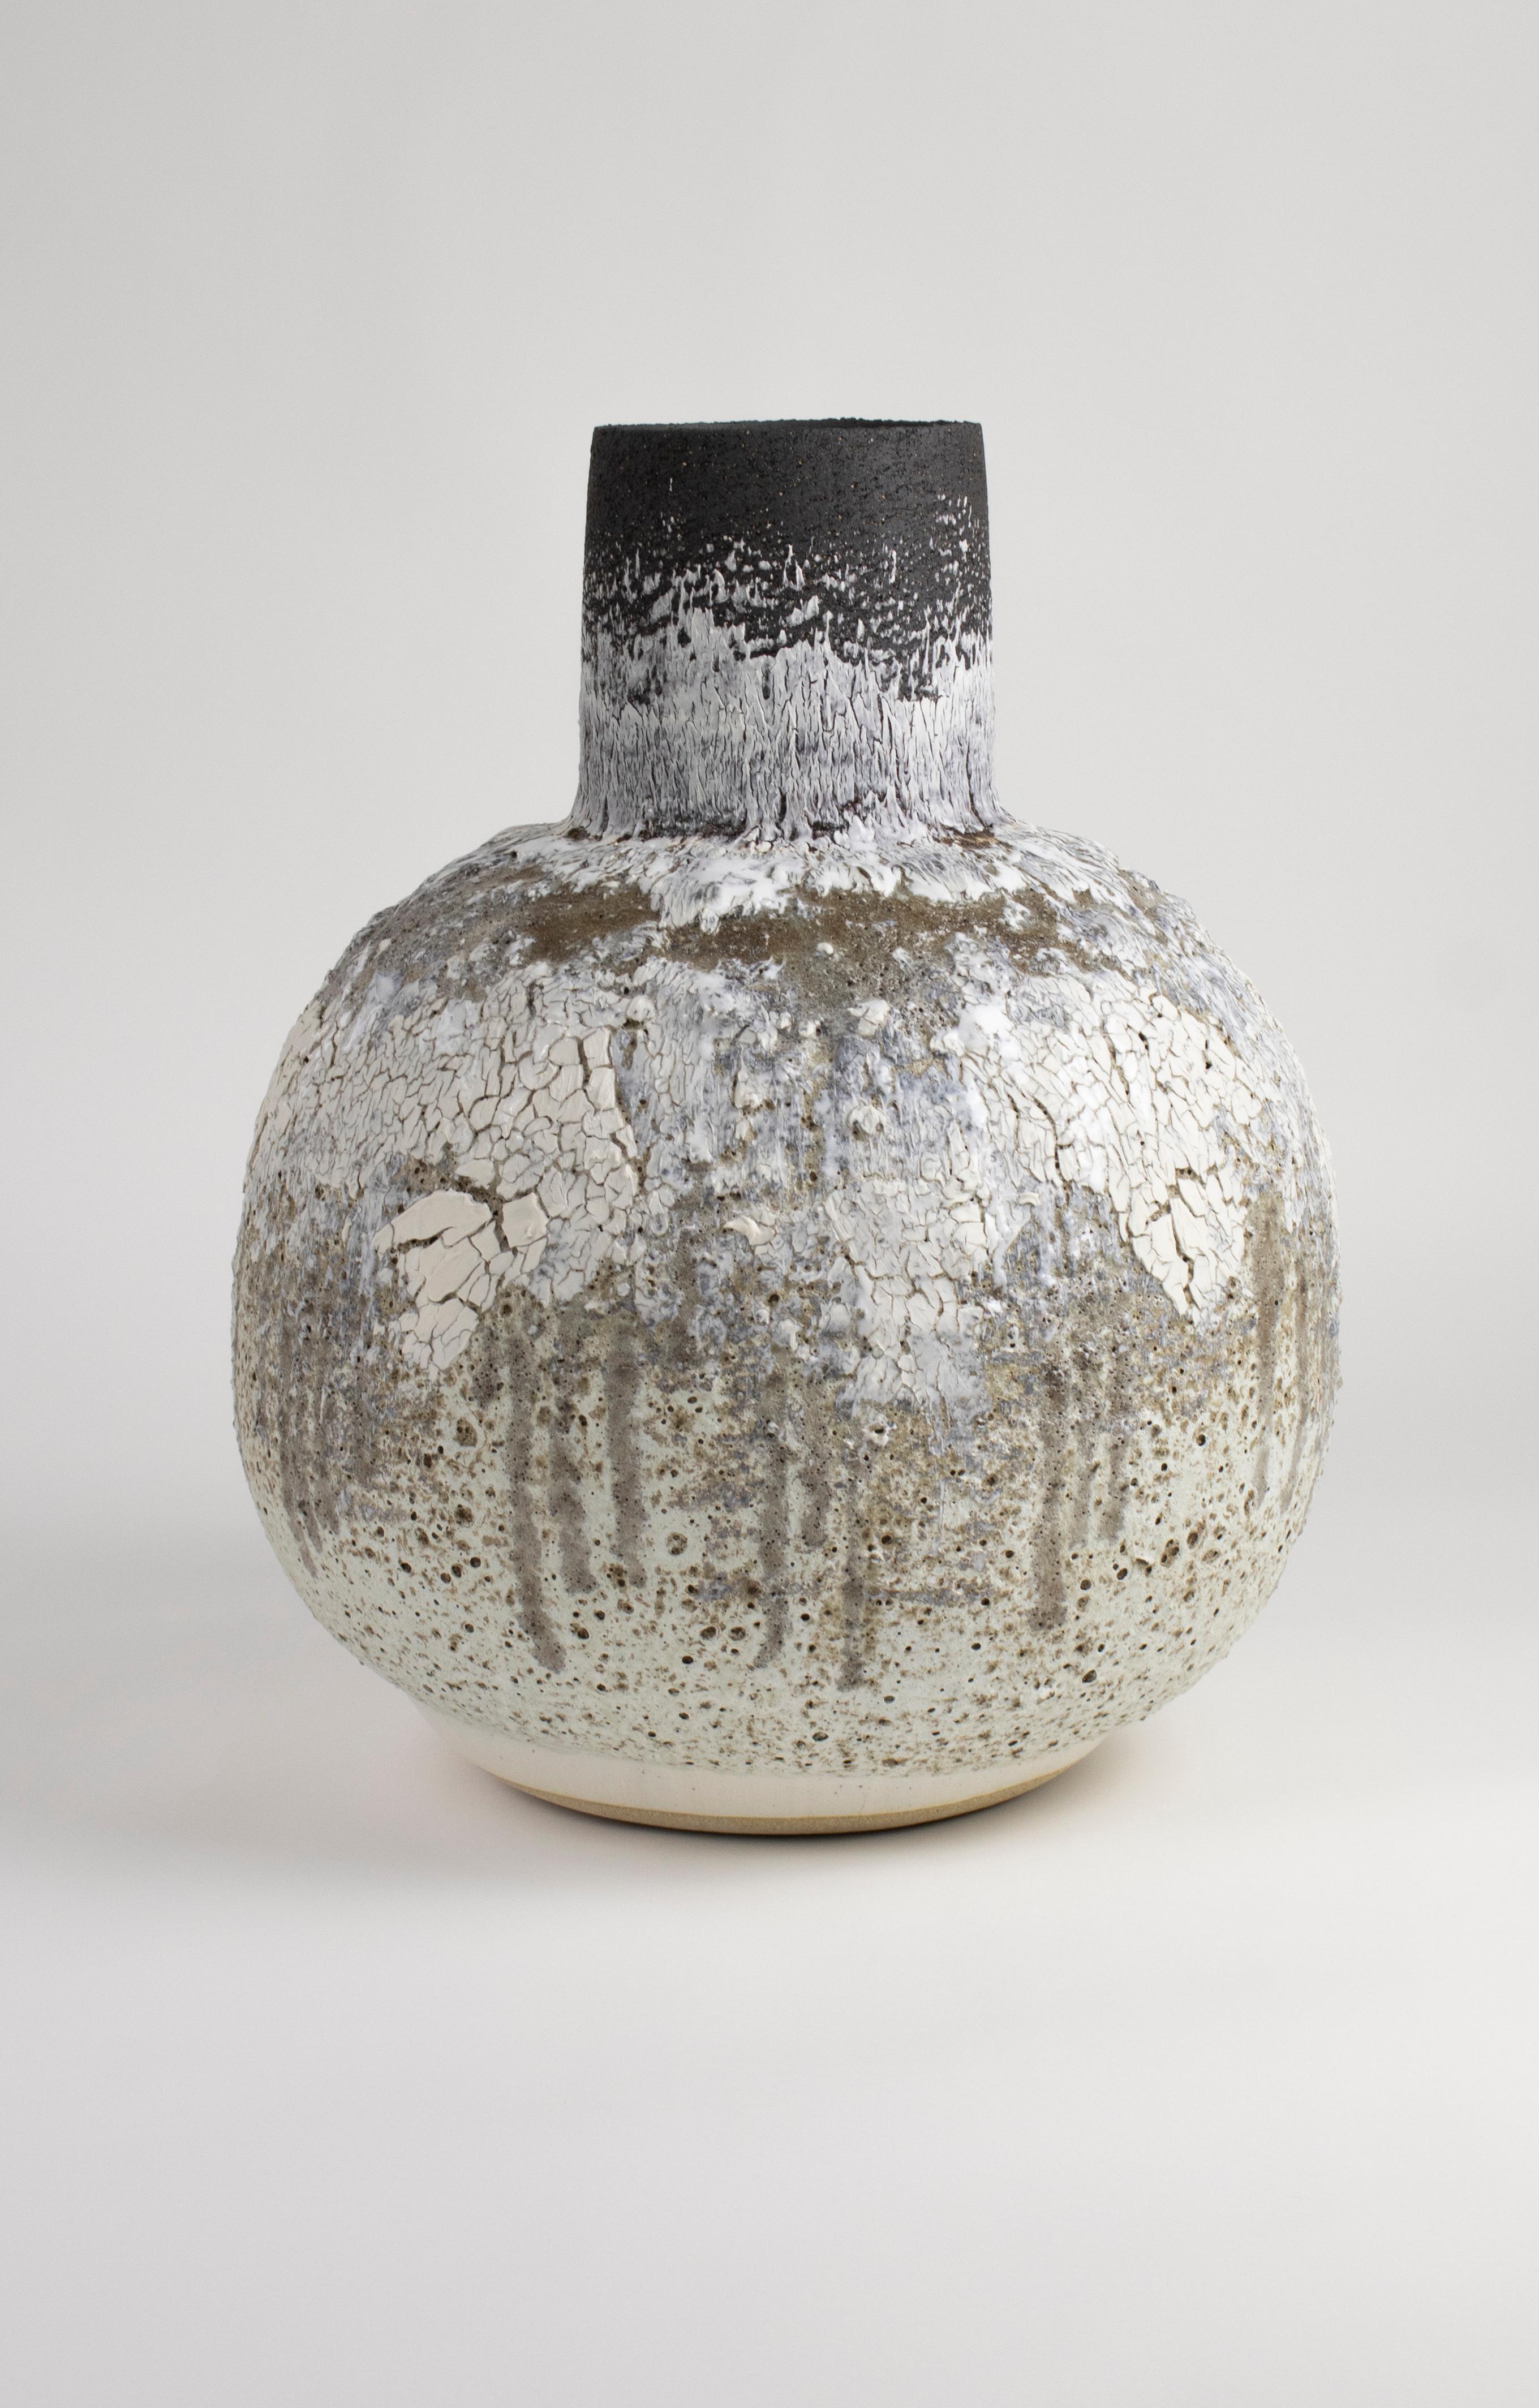 Grand vase de lune en grès blanc et noir et en porcelaine avec une glaçure à texture volcanique.

L'œuvre est construite à la main en utilisant une combinaison d'argiles noires et chamoisées en grès, des engobes volcaniques sont ajoutés sous